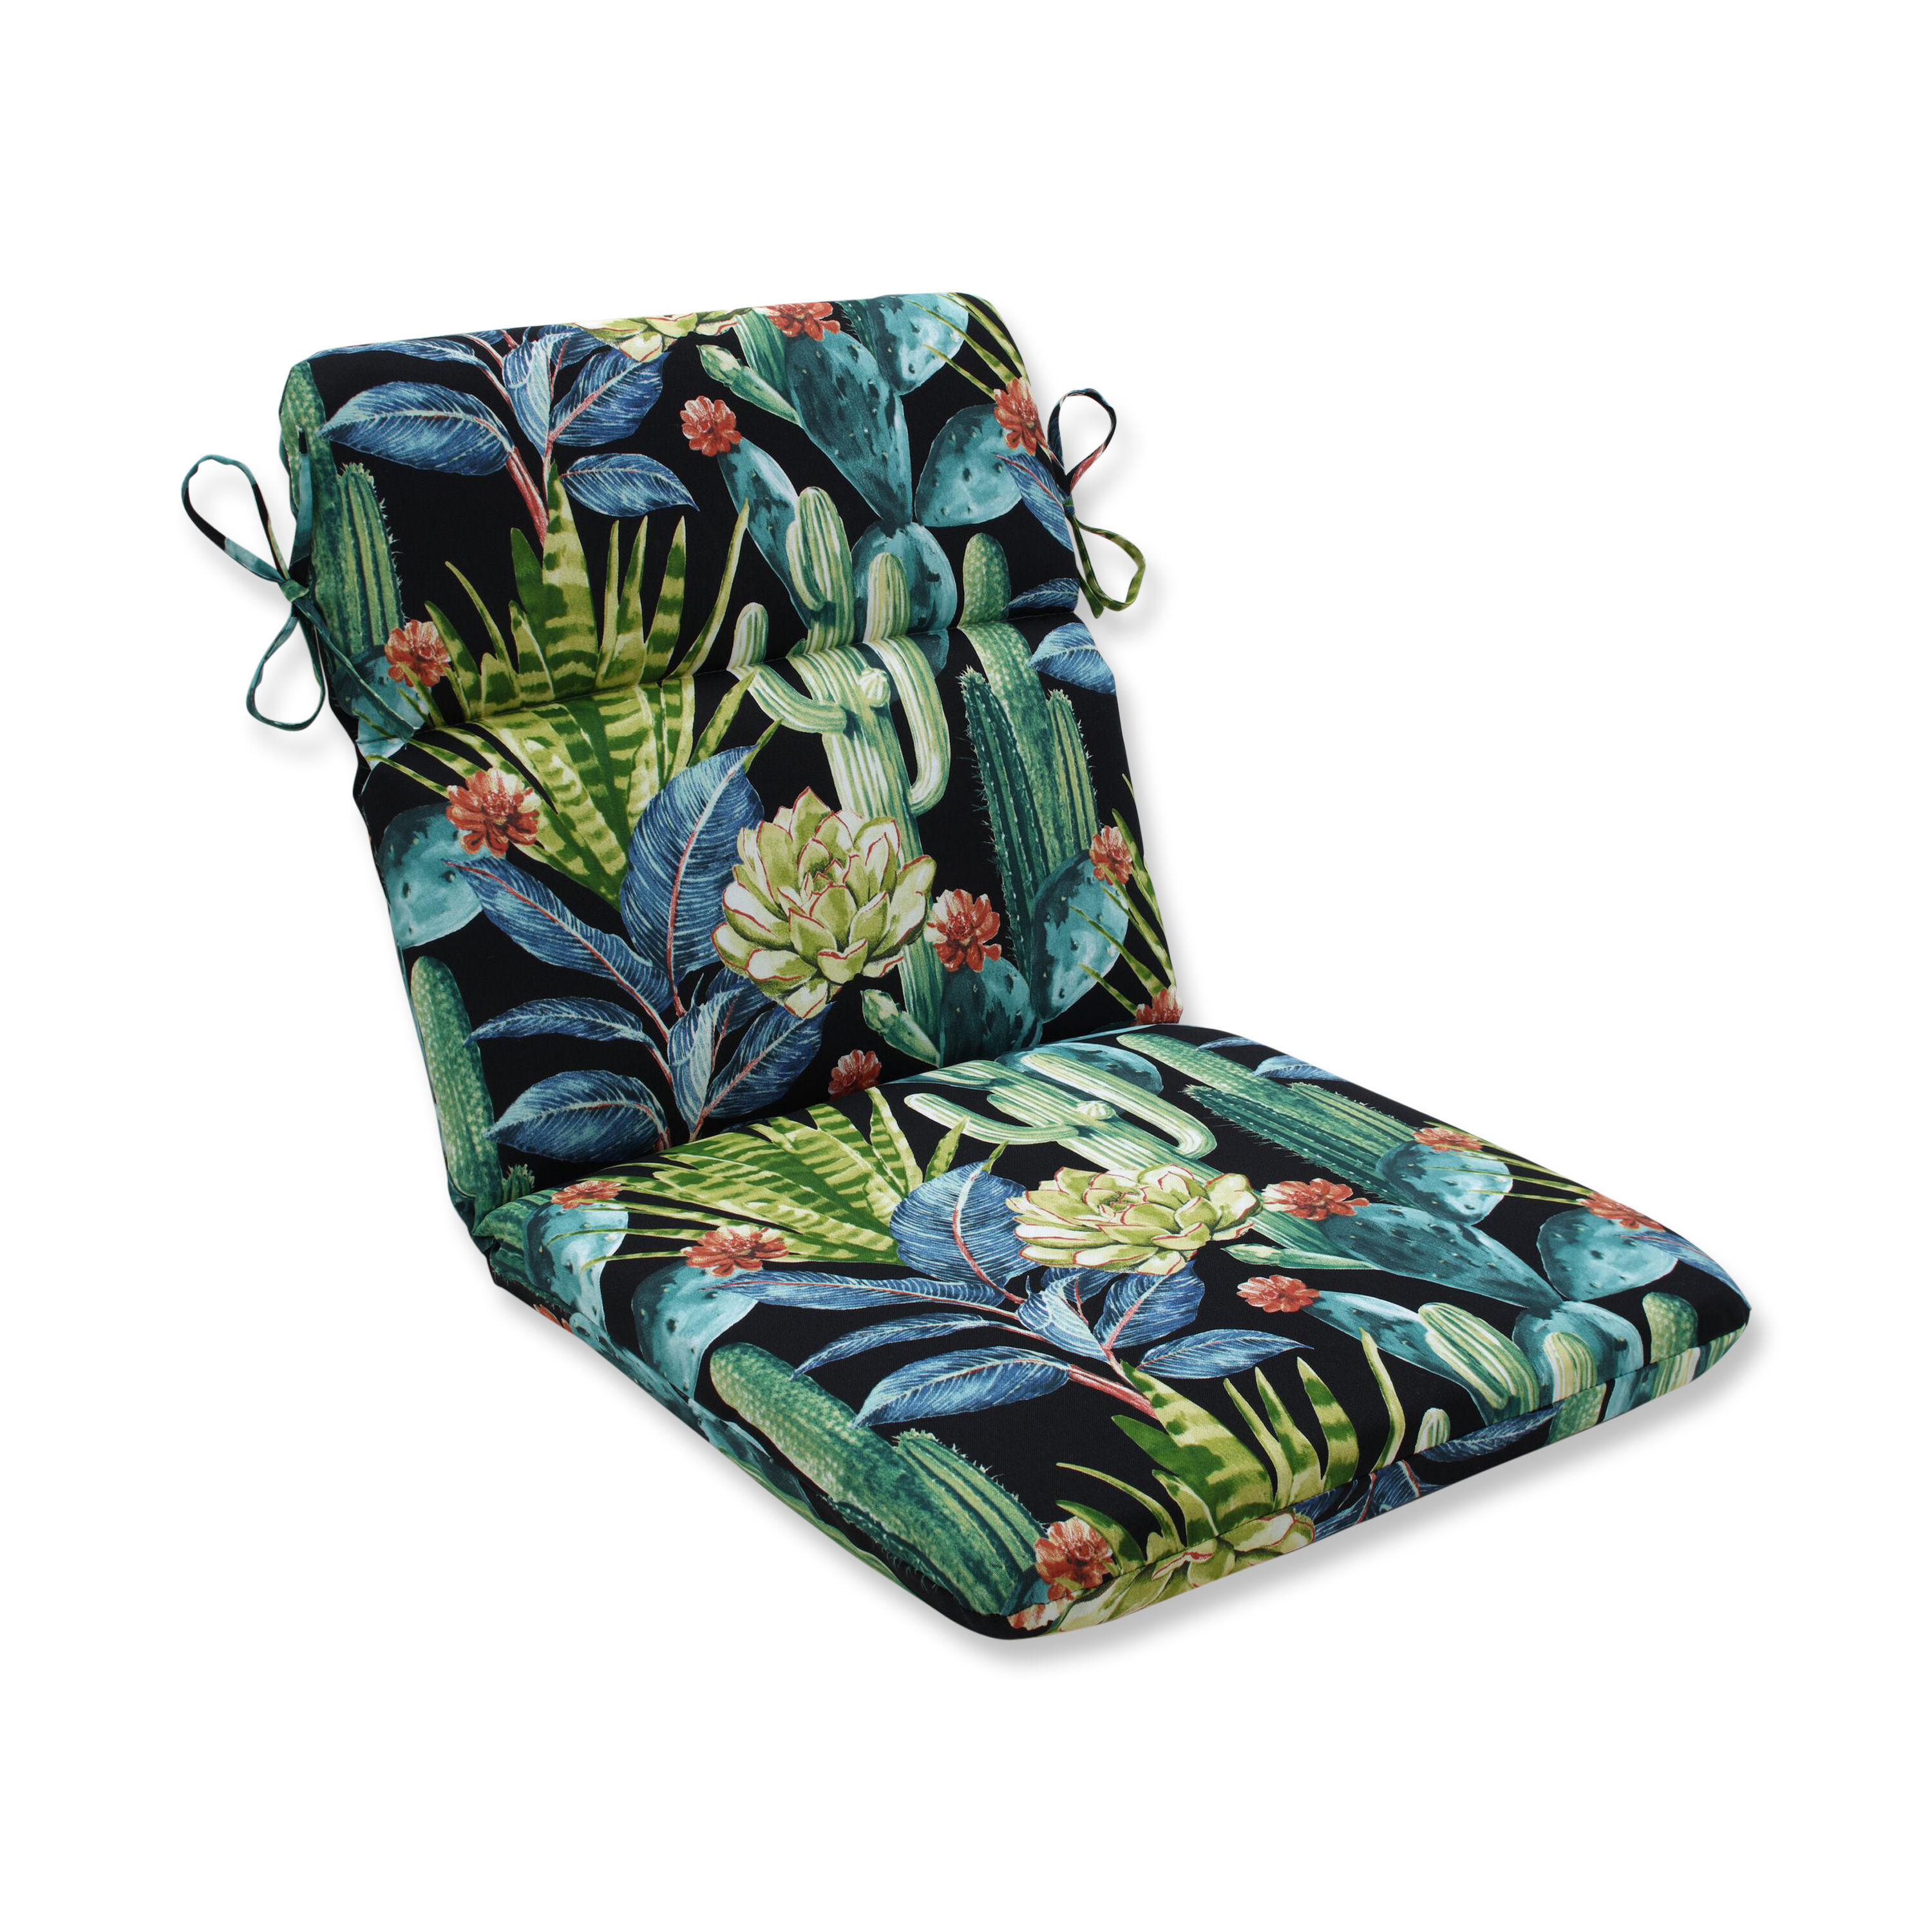 Chair Pads & Kitchen Chair Cushions You'll Love